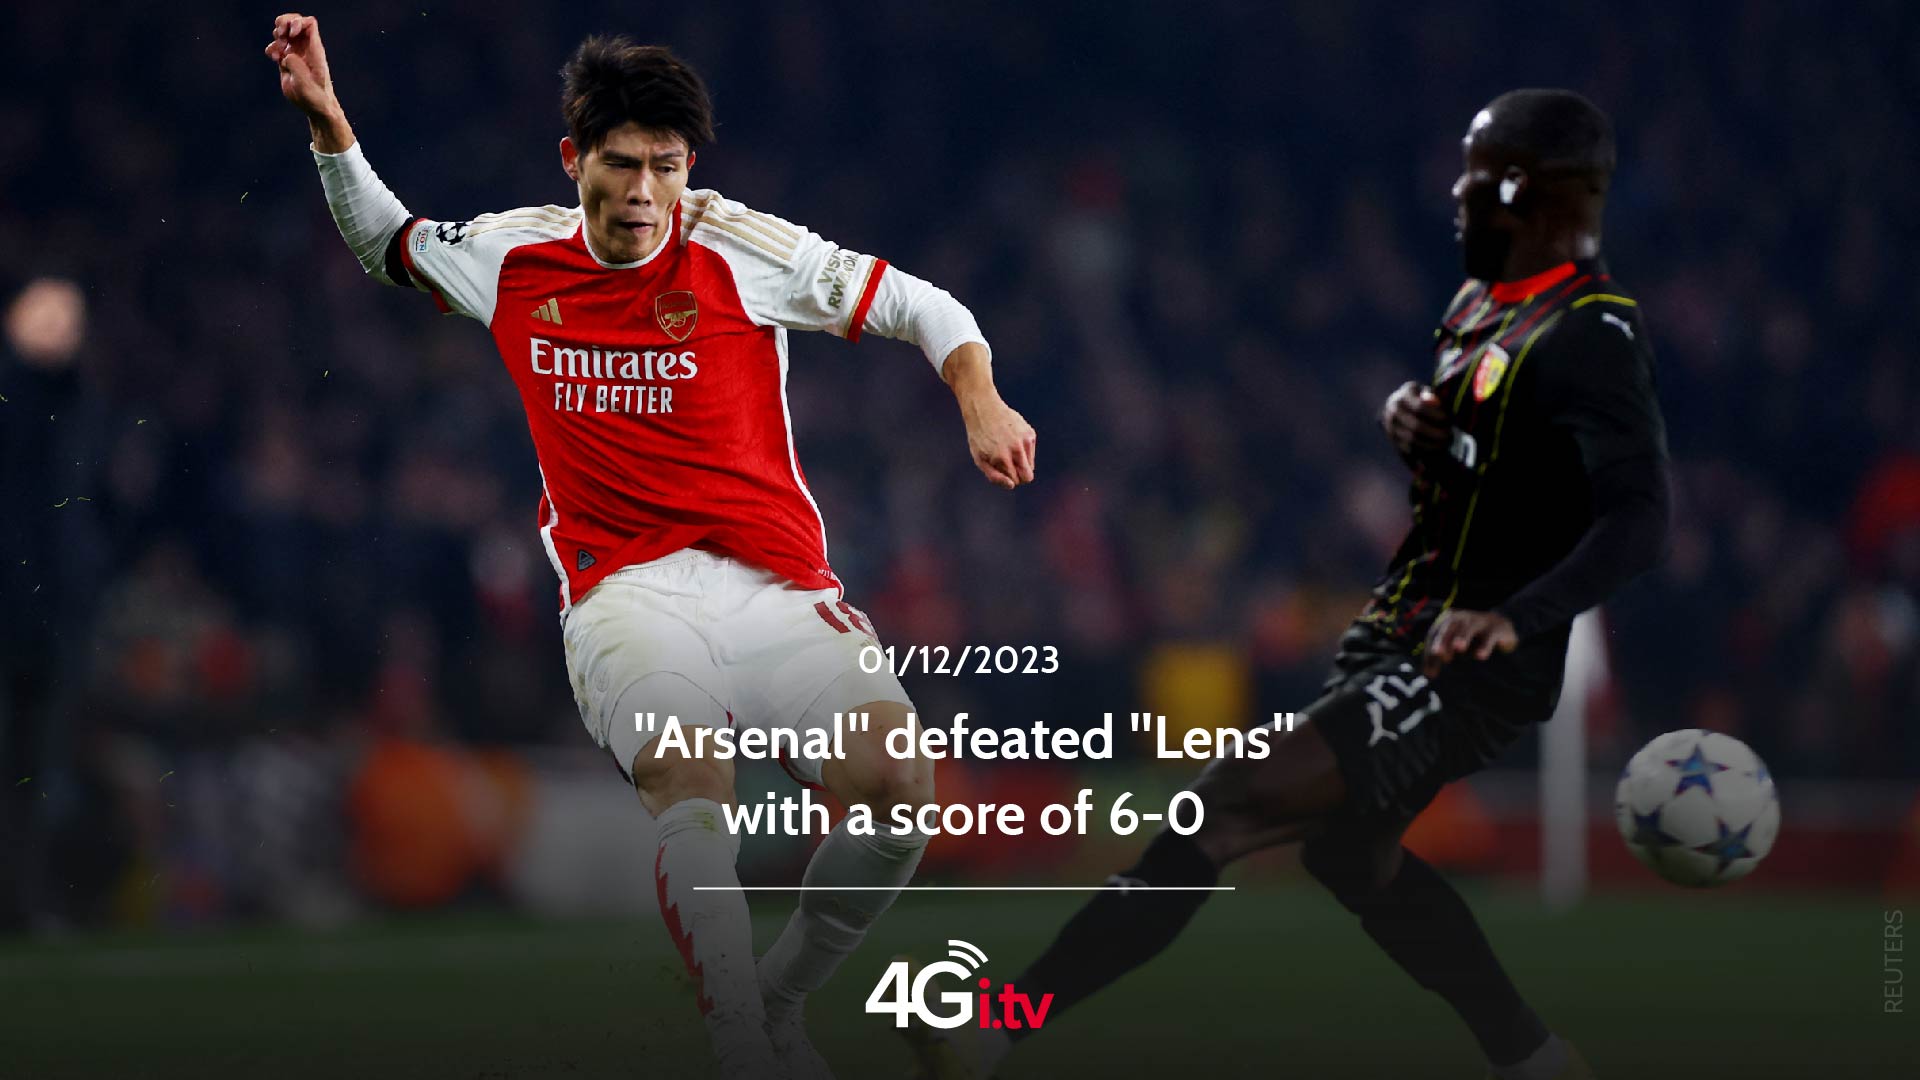 Lee más sobre el artículo “Arsenal” defeated “Lens” with a score of 6-0